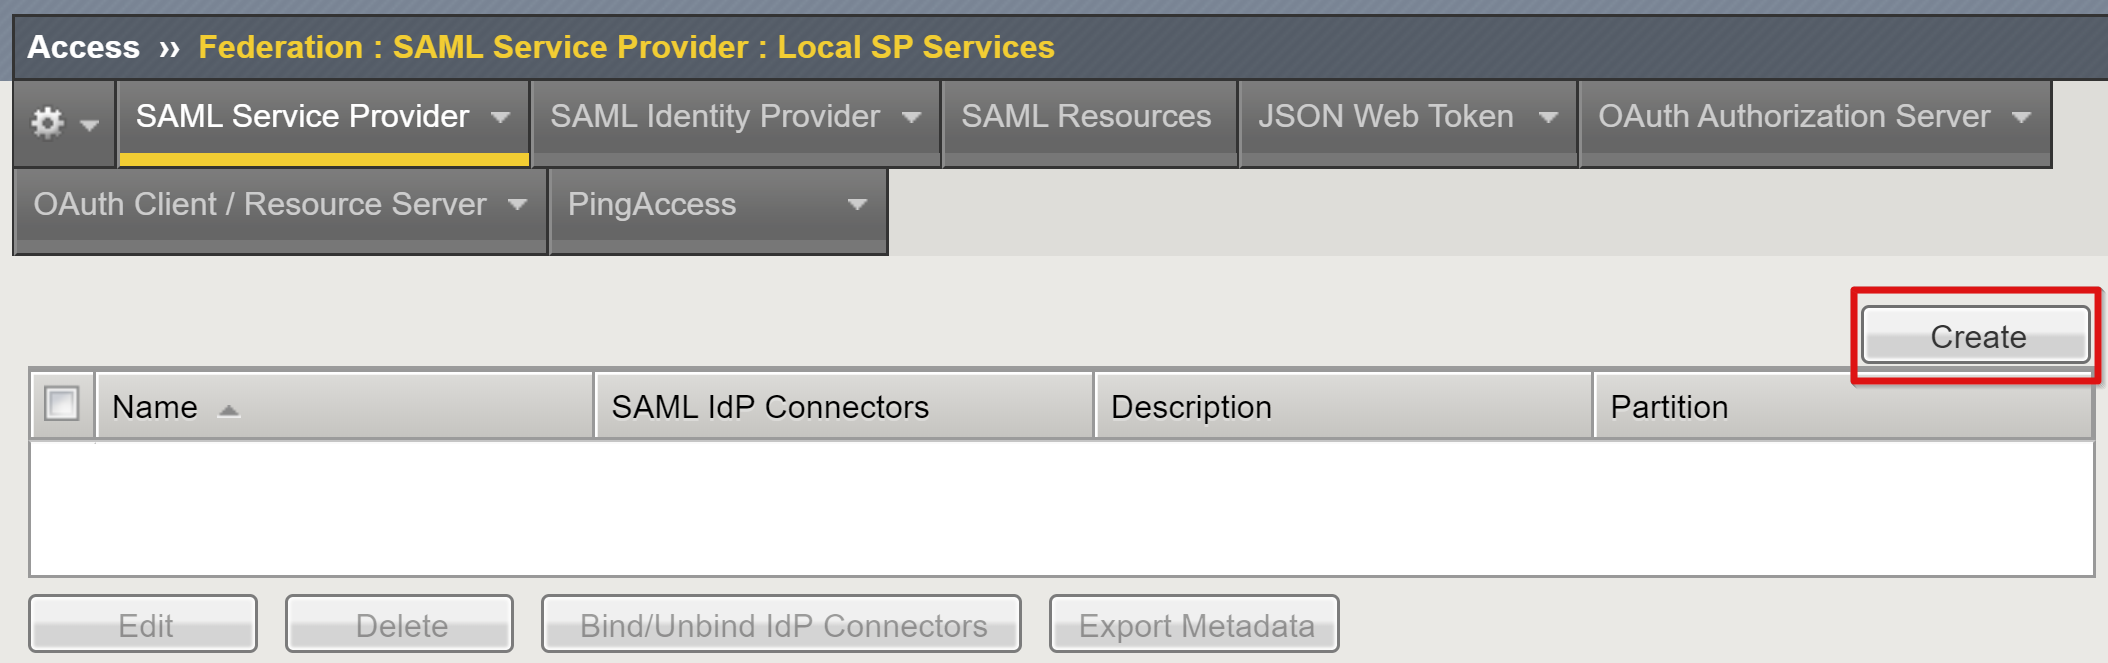 Captura de tela da opção Criar em Provedor de Serviços SAML em Serviços SP Locais.